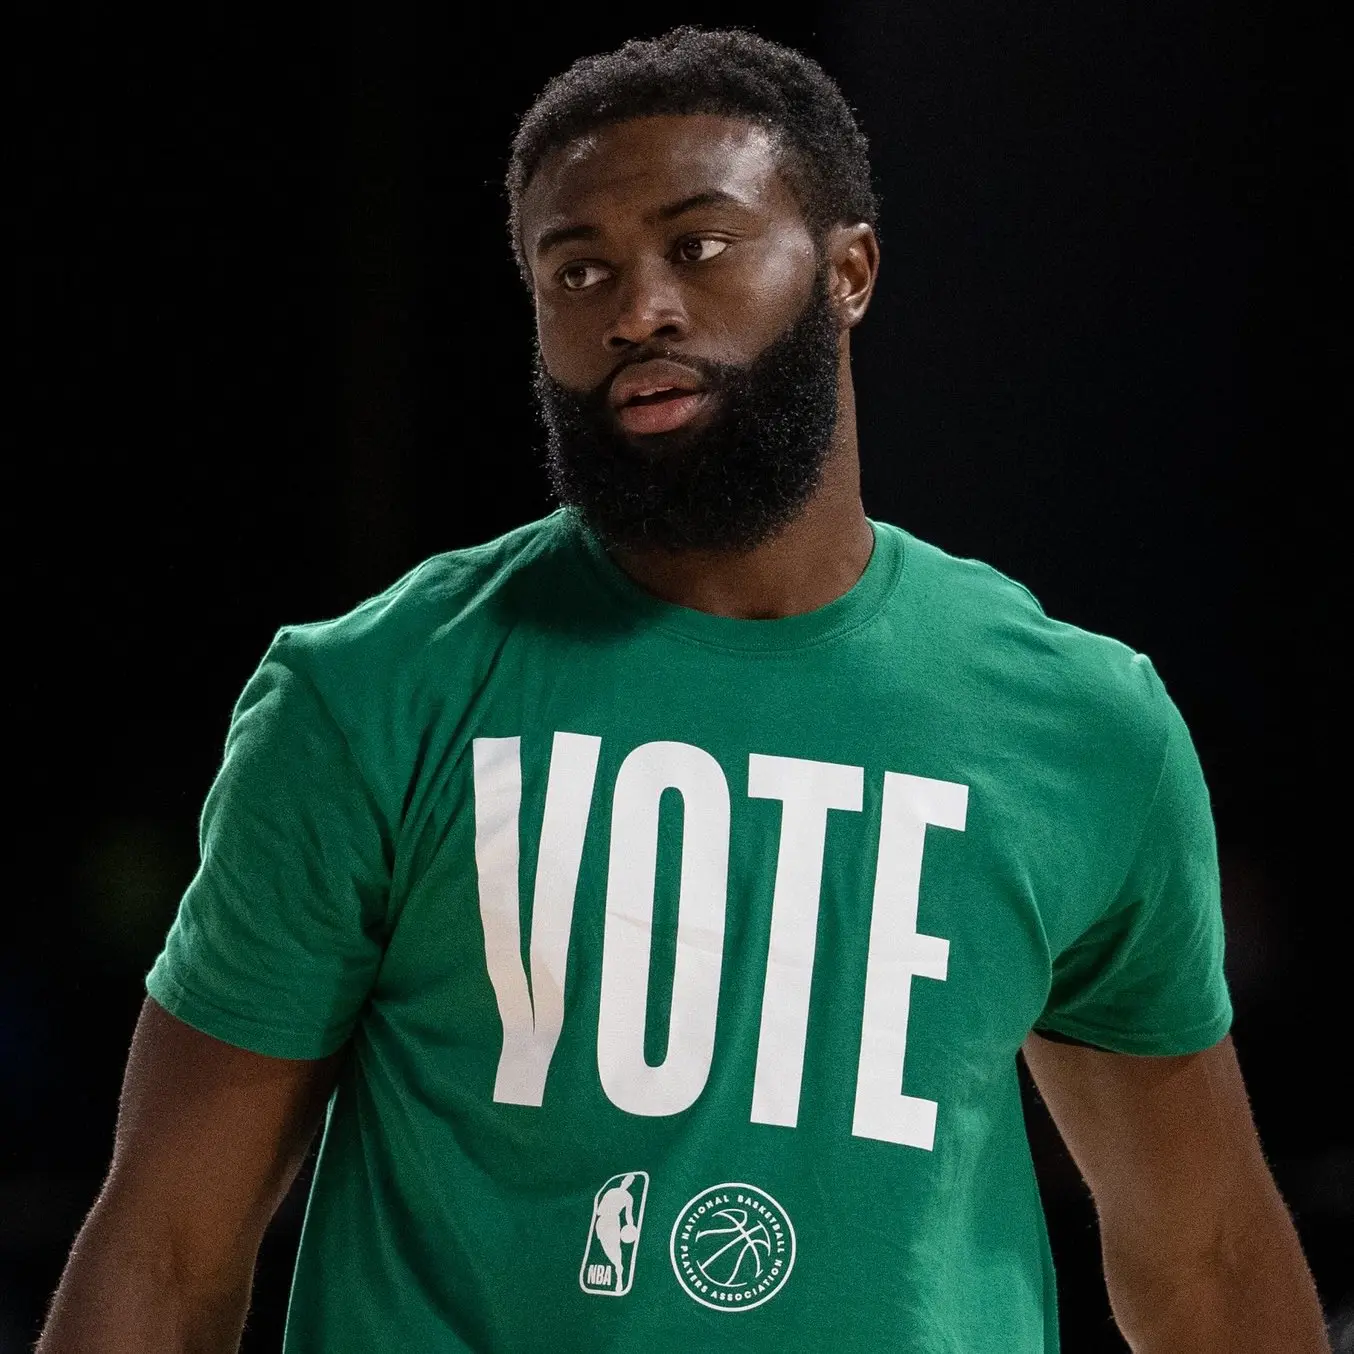 NBA considera permitir uso de apelidos nas camisas dos jogadores